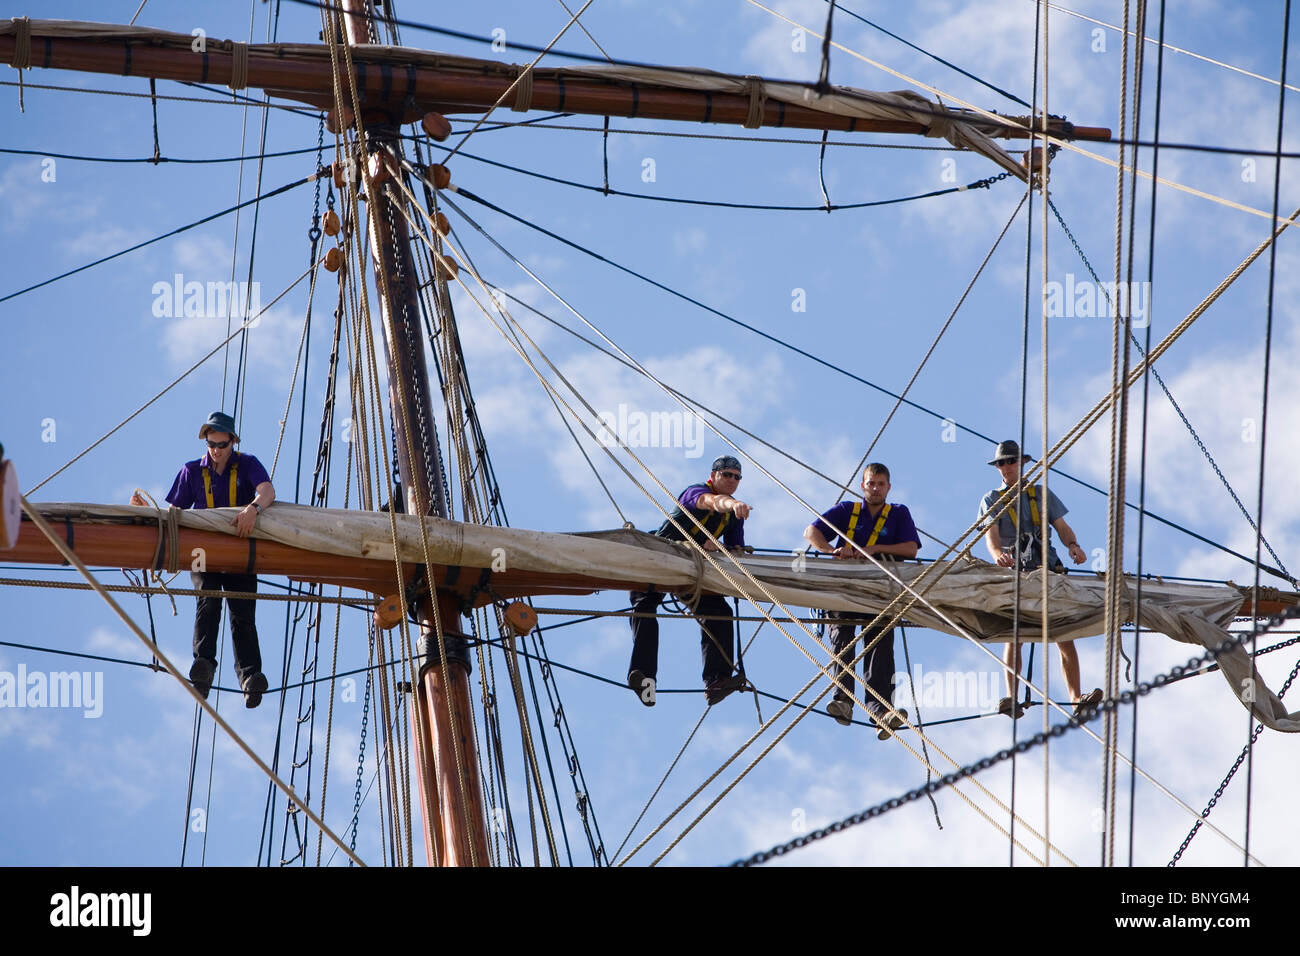 Los marineros en el mástil de un velero tradicional, durante el Festival de barcos de madera. Hobart, Tasmania, Australia Foto de stock